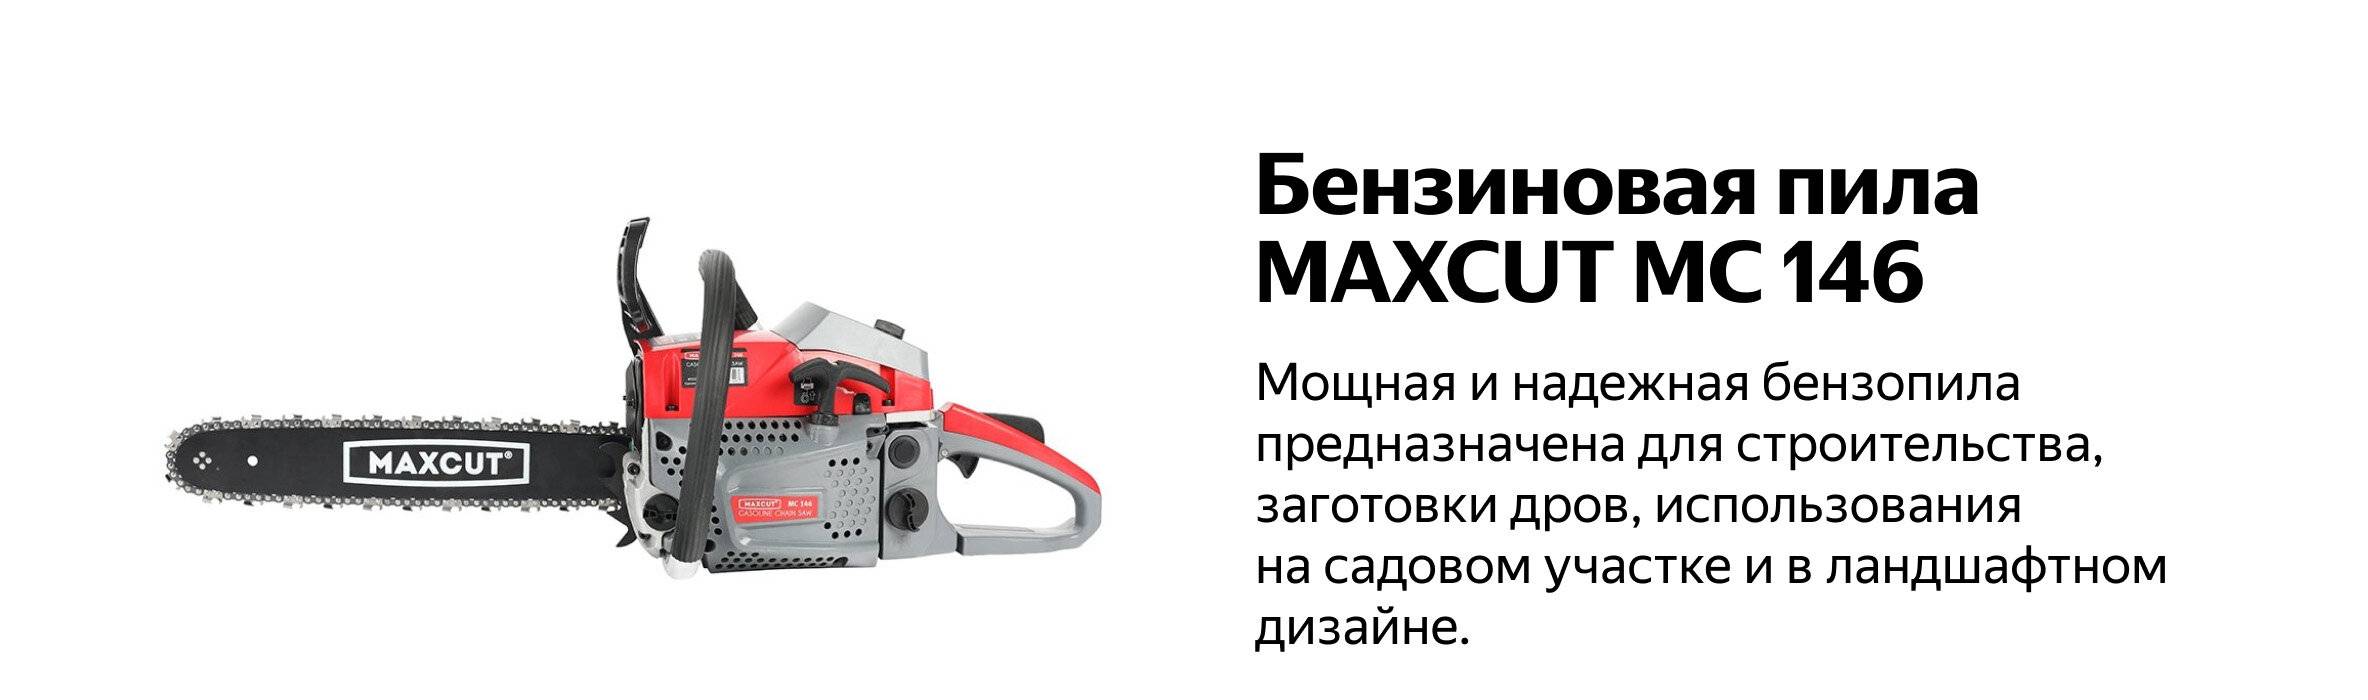 Бензопила maxcut mc 146: обзор, характеристики, отзывы